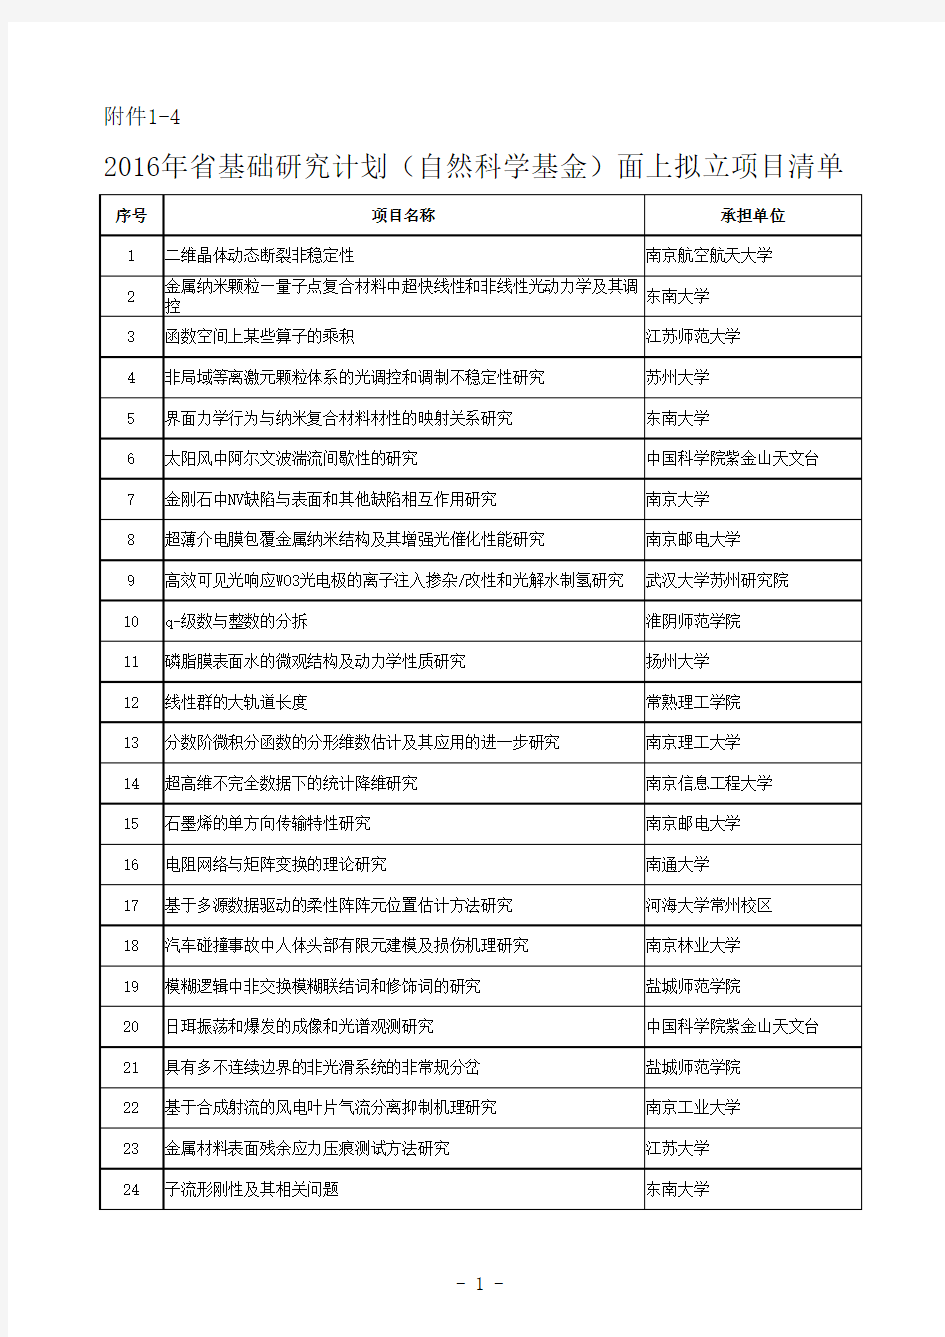 2016年江苏省基础研究计划(自然科学基金)面上拟立项目清单